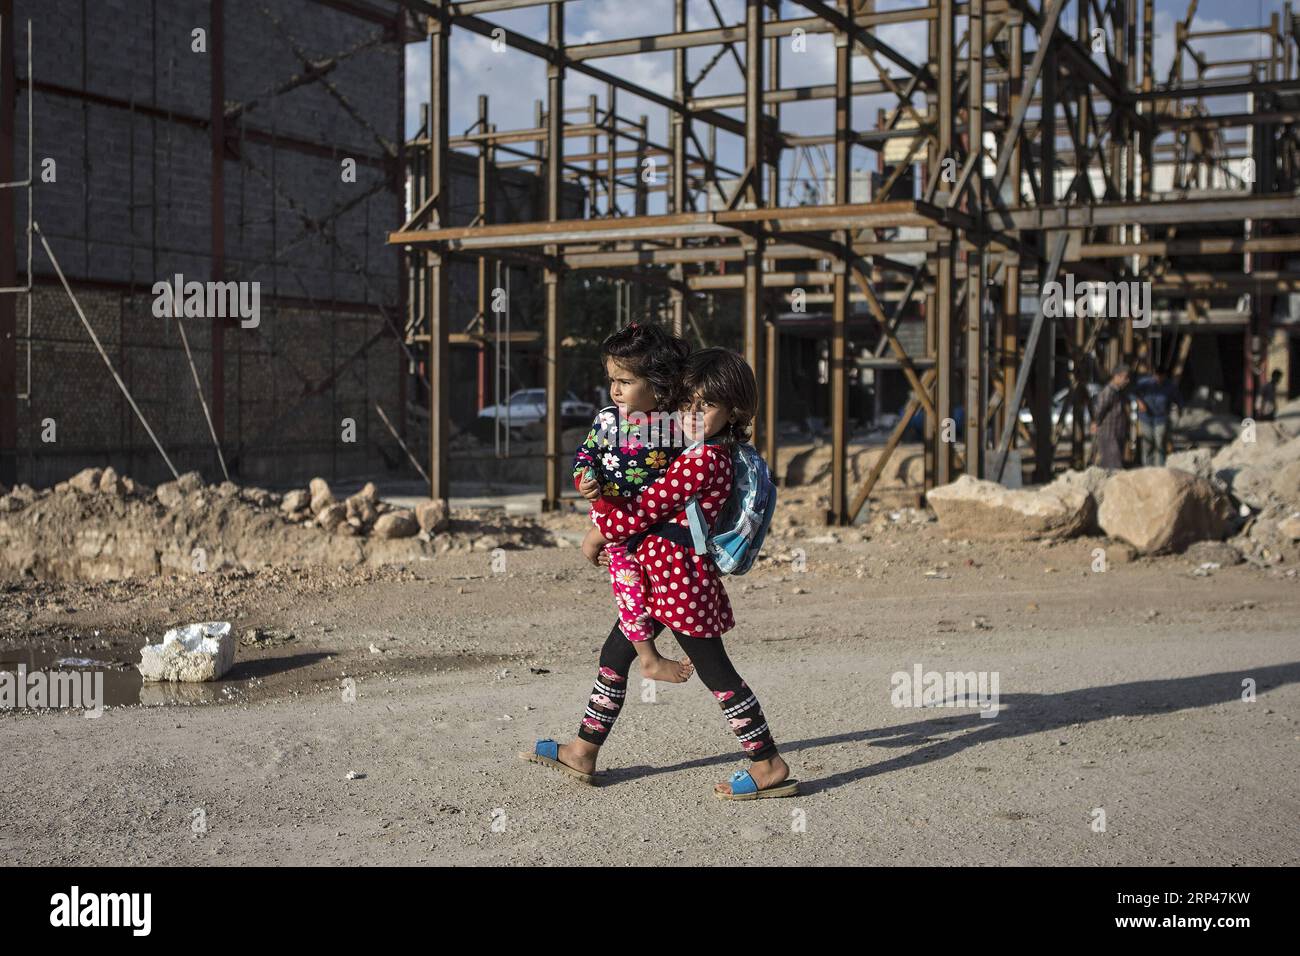 (181030) -- SARPOL-E ZAHAB (IRAN), 30. Oktober 2018 -- Ein Mädchen, das ihre kleine Schwester hält, geht nach fast einem Jahr des schmerzhaften Erdbebens in Sarpol-e Zahab, Iran, am 29. Oktober 2018 an unfertigen Gebäuden vorbei. Das Erdbeben der Stärke 7,3 traf die Provinz Kermanshah am 12. November 2017, wobei Hunderte von Menschen getötet wurden. ) (yy) IRAN-SARPOL-E ZAHAB-LEBEN NACH ERDBEBEN AhmadxHalabisaz PUBLICATIONxNOTxINxCHN Stockfoto